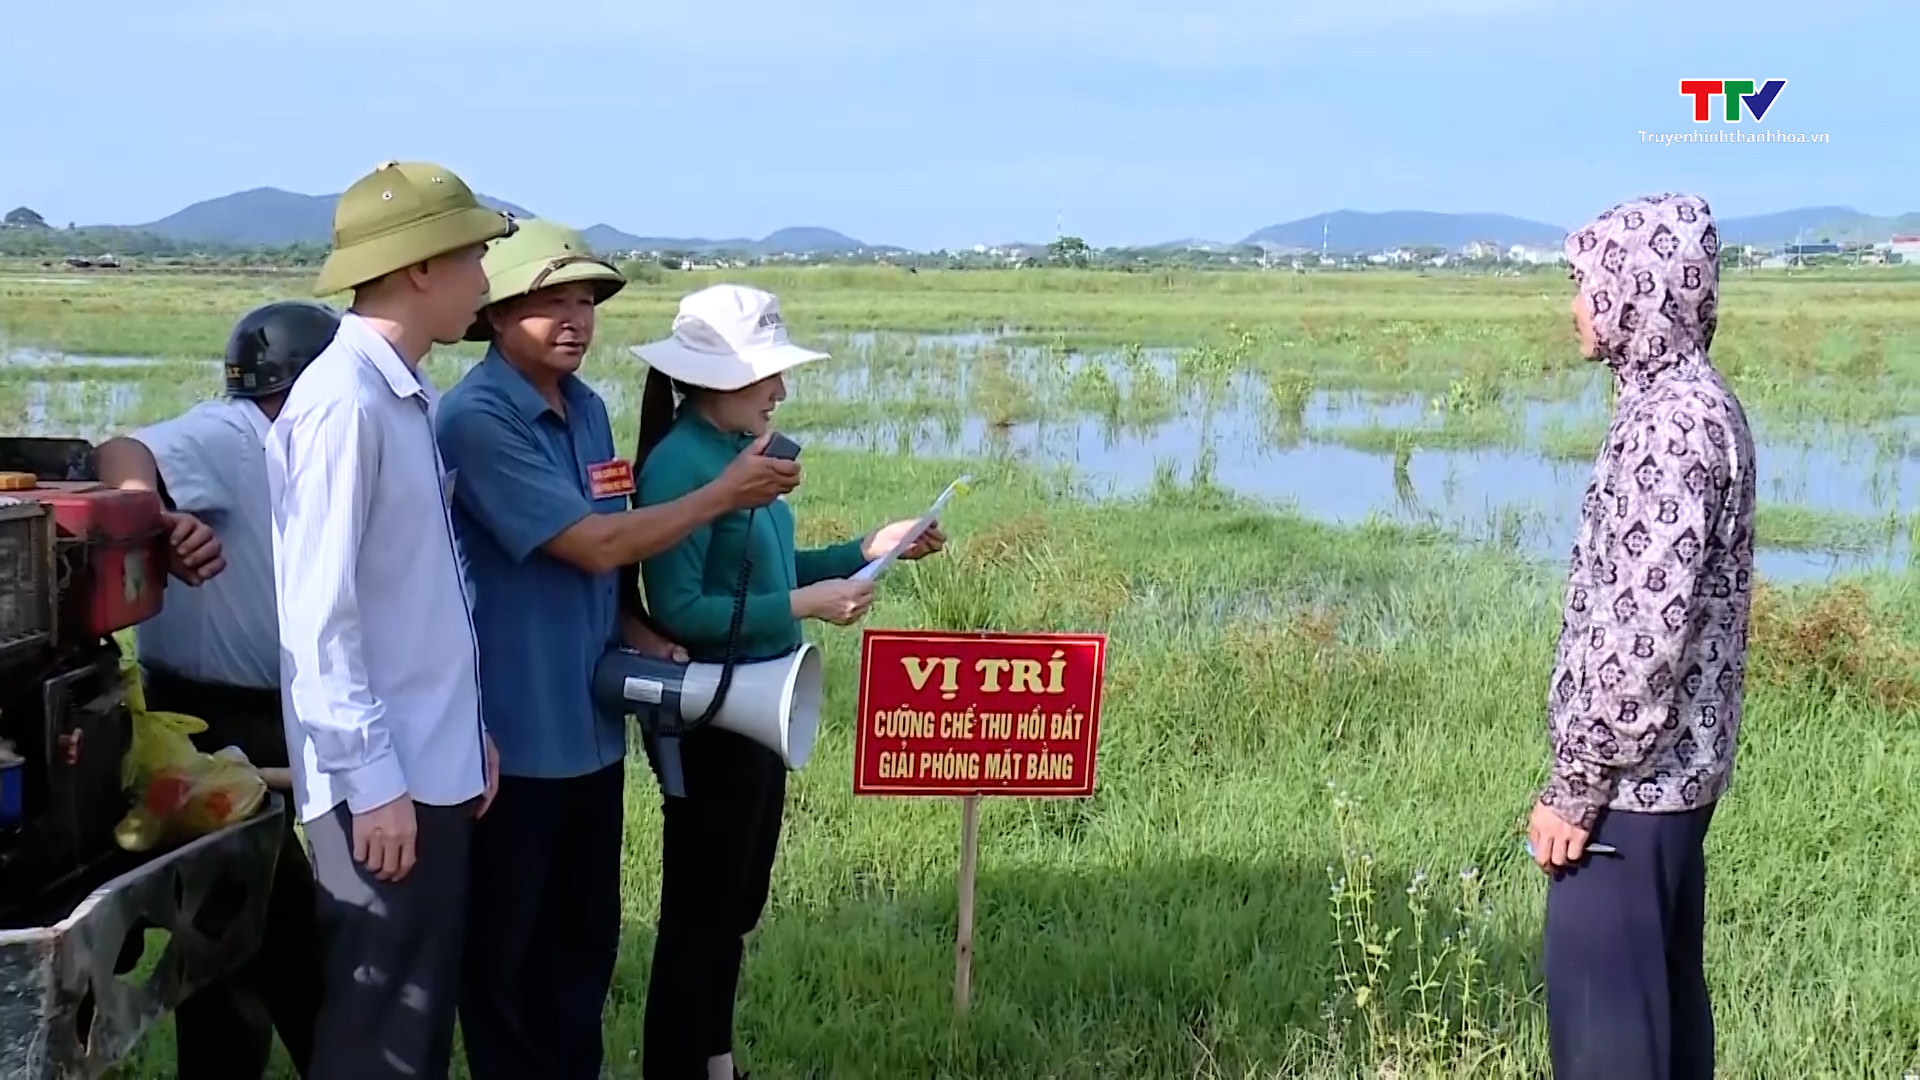 Nhà nước Việt Nam luôn tôn trọng quyền và lợi ích hợp pháp của người dân trong lĩnh vực đất đai - Ảnh 10.